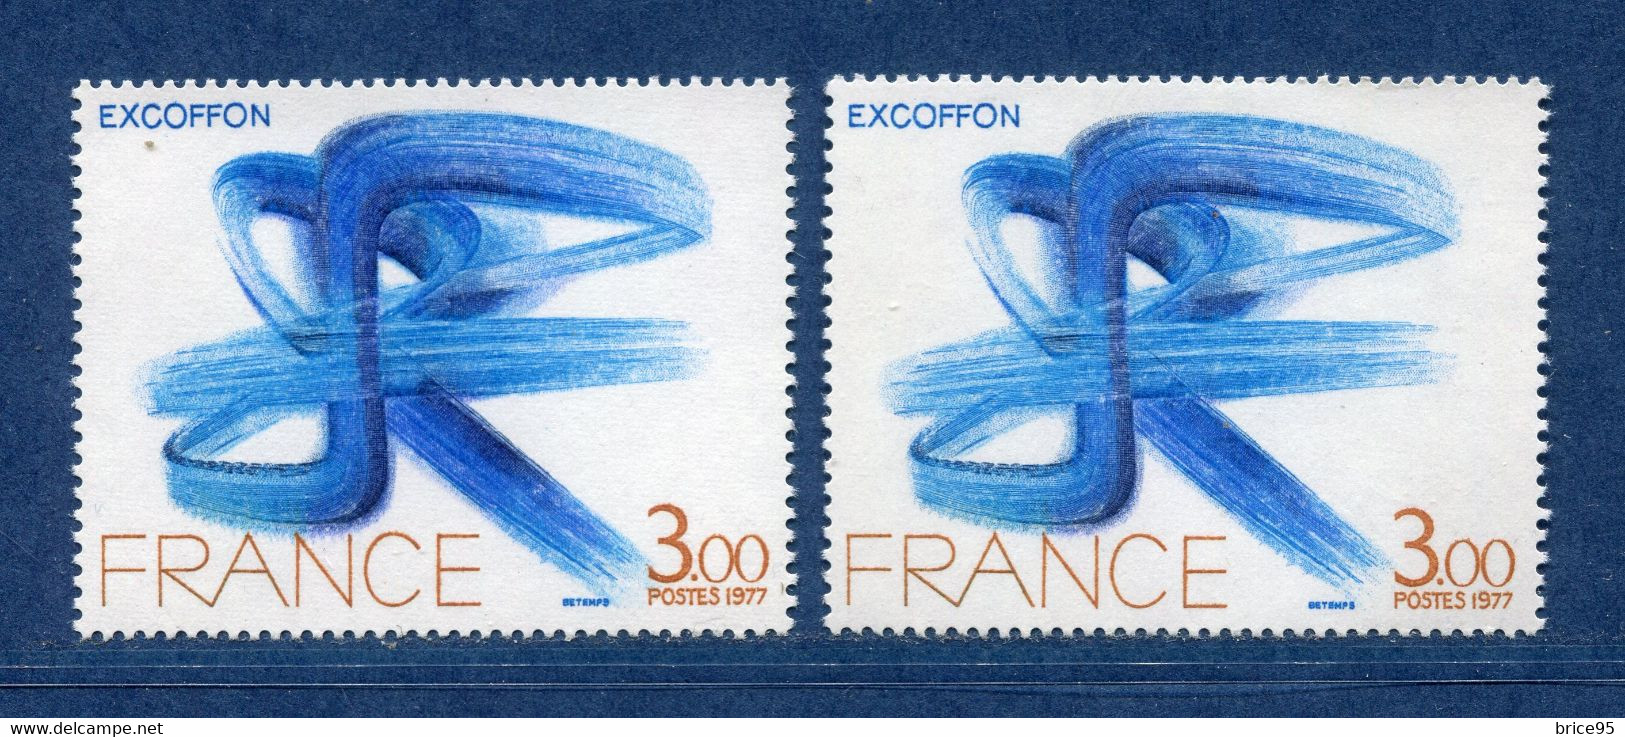 ⭐ France - Variété - YT N° 1951 - Couleurs - Pétouilles - Neuf Sans Charnière - 1977 ⭐ - Ungebraucht